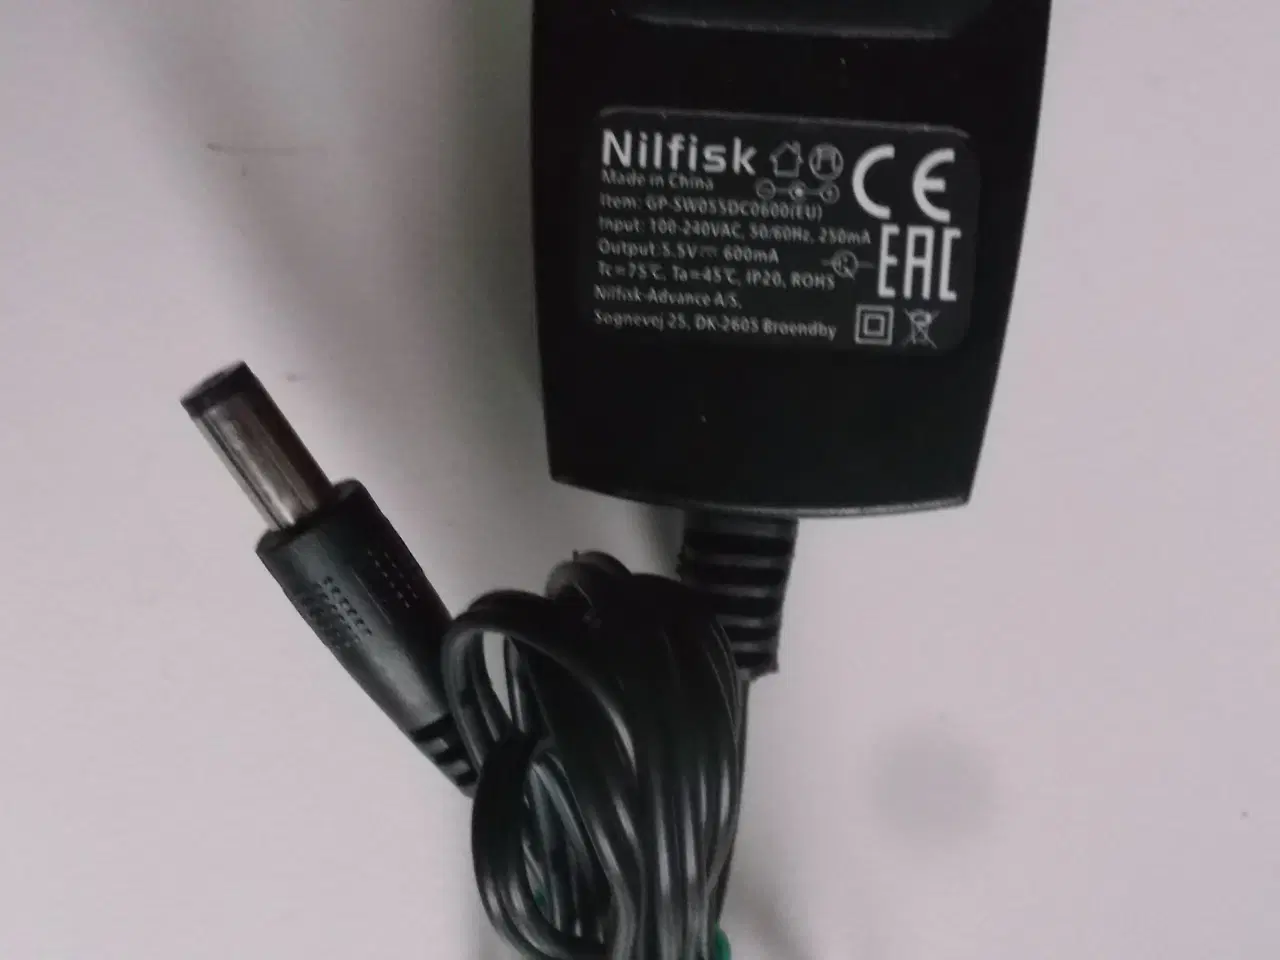 Billede 1 - Strømforsyning / lader Nilfisk GP-SW055DC0600(EU)